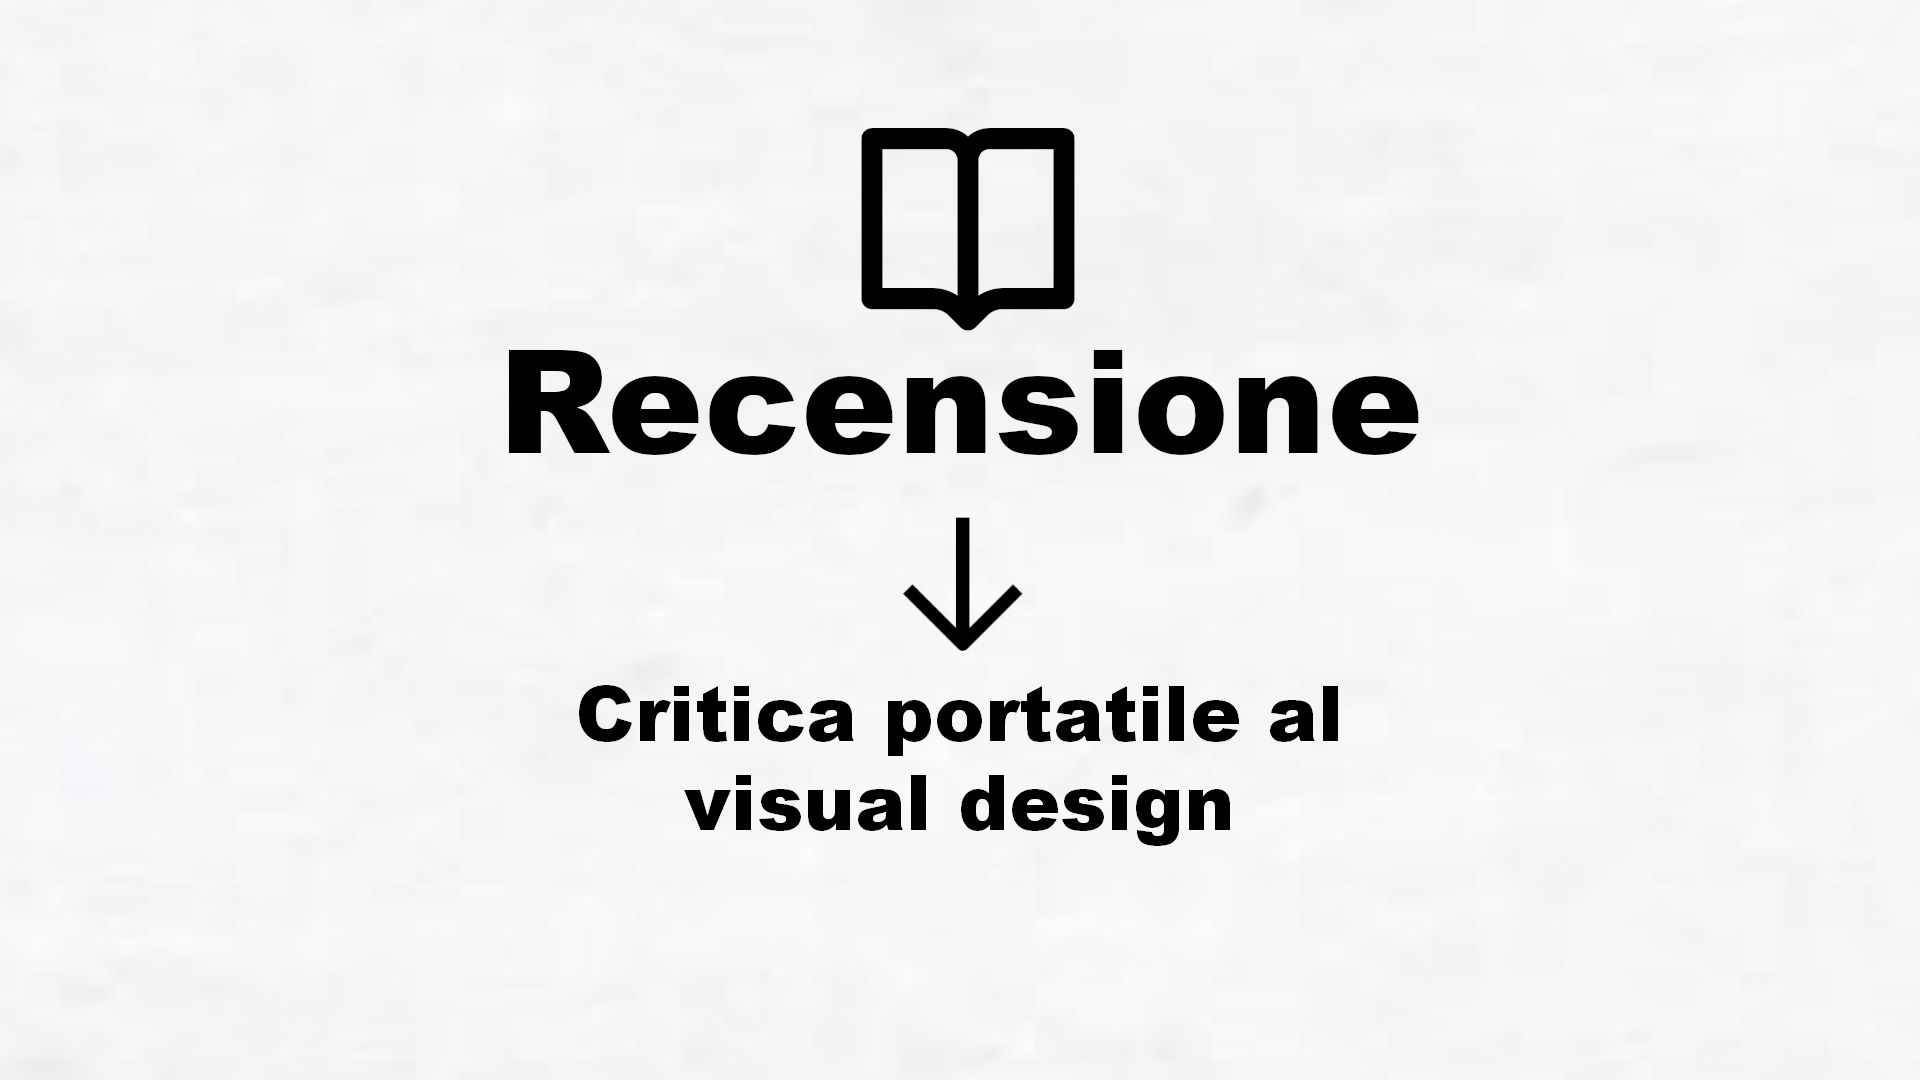 Critica portatile al visual design – Recensione Libro